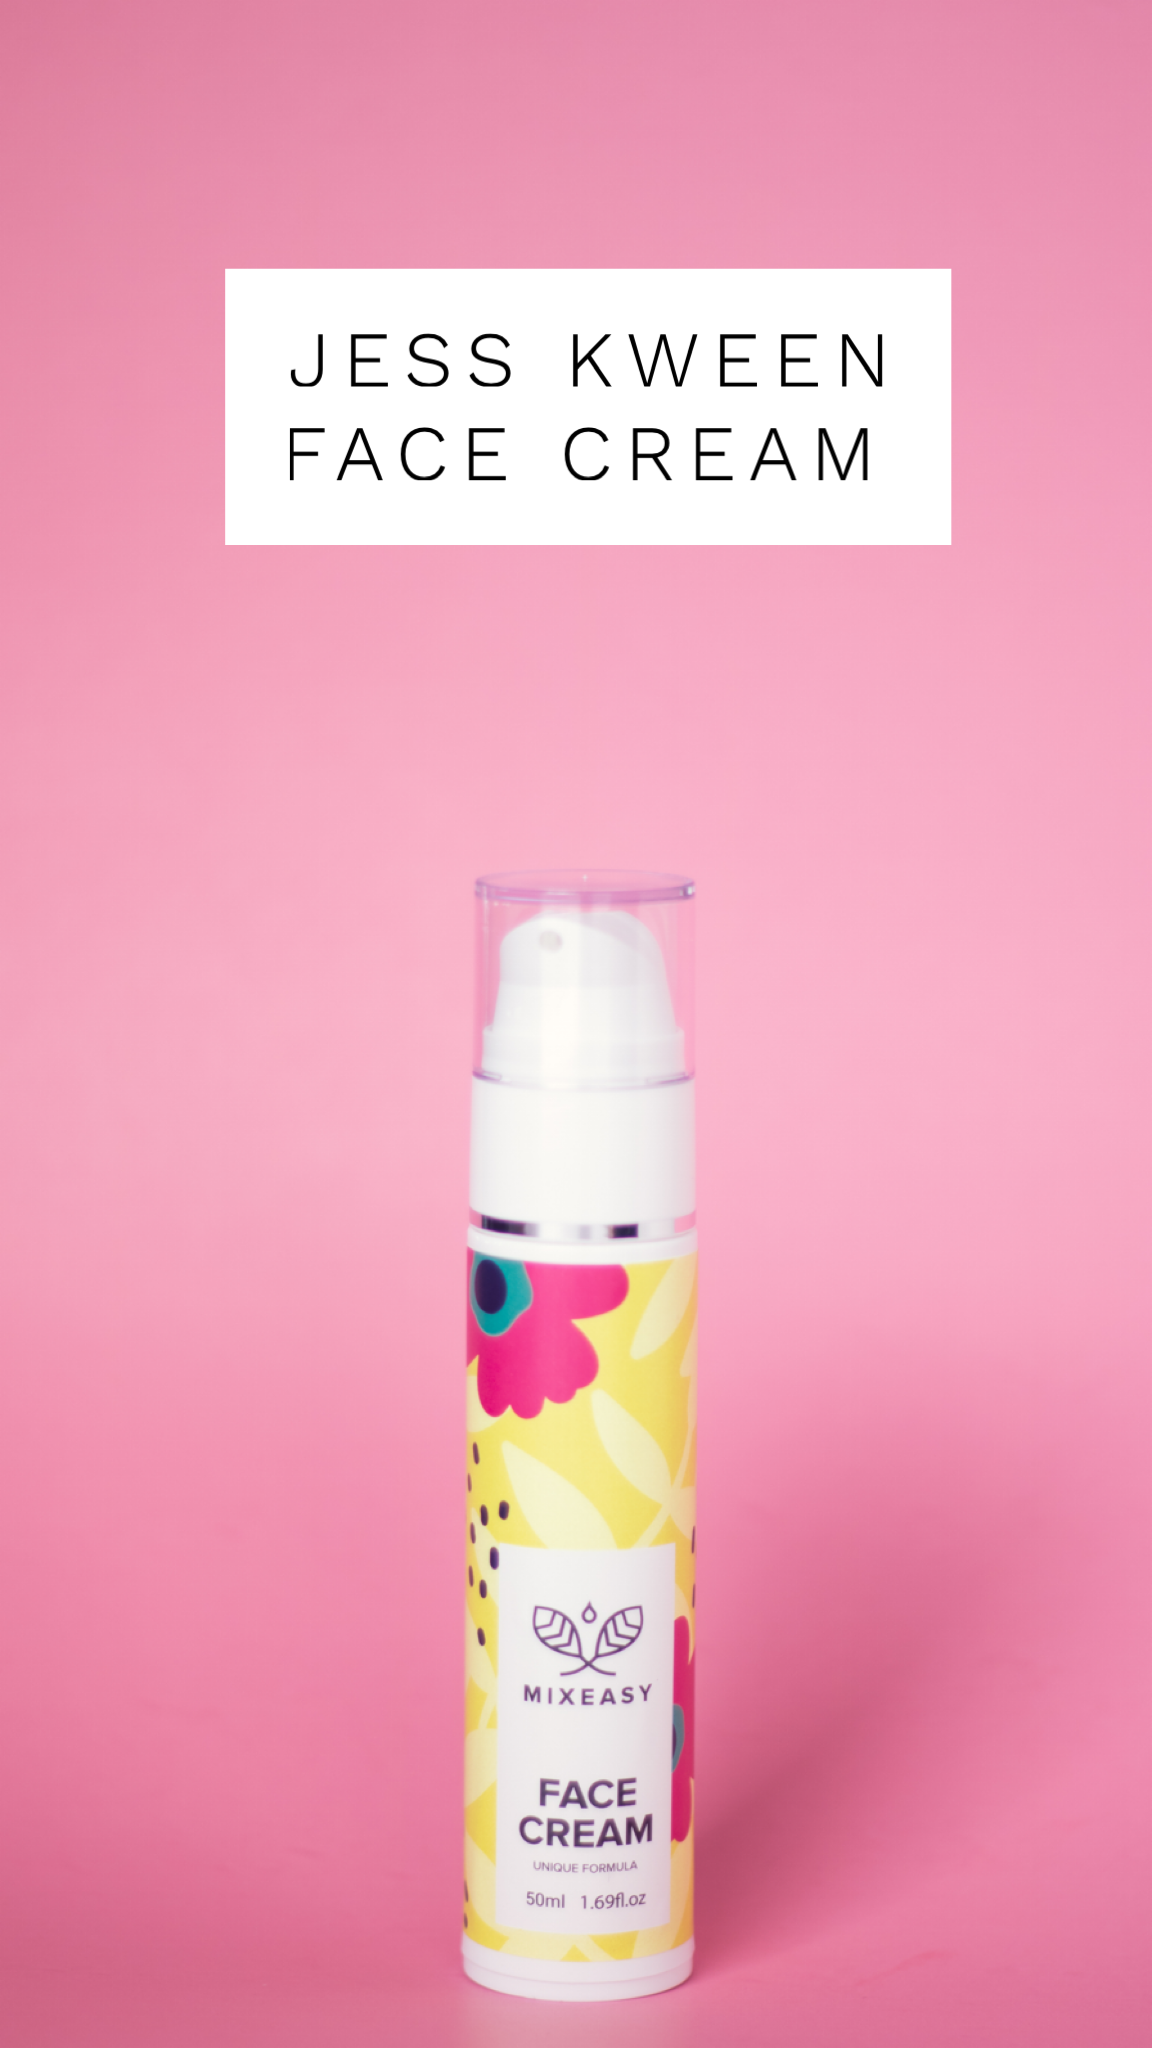 Jess Kween Face Cream from MixEasy.com